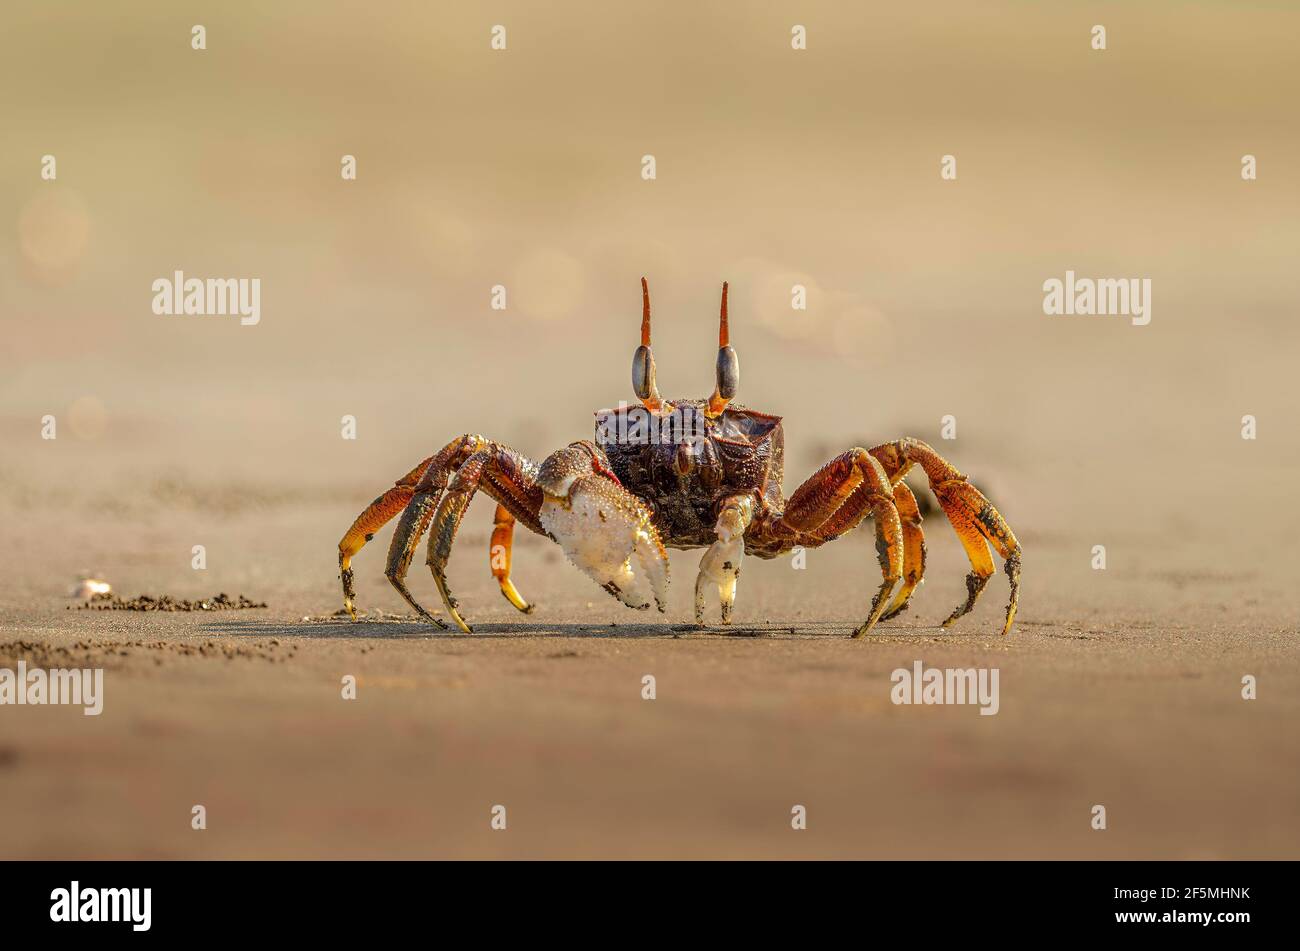 Crabe fantôme sur le sable au bord de la mer Banque D'Images